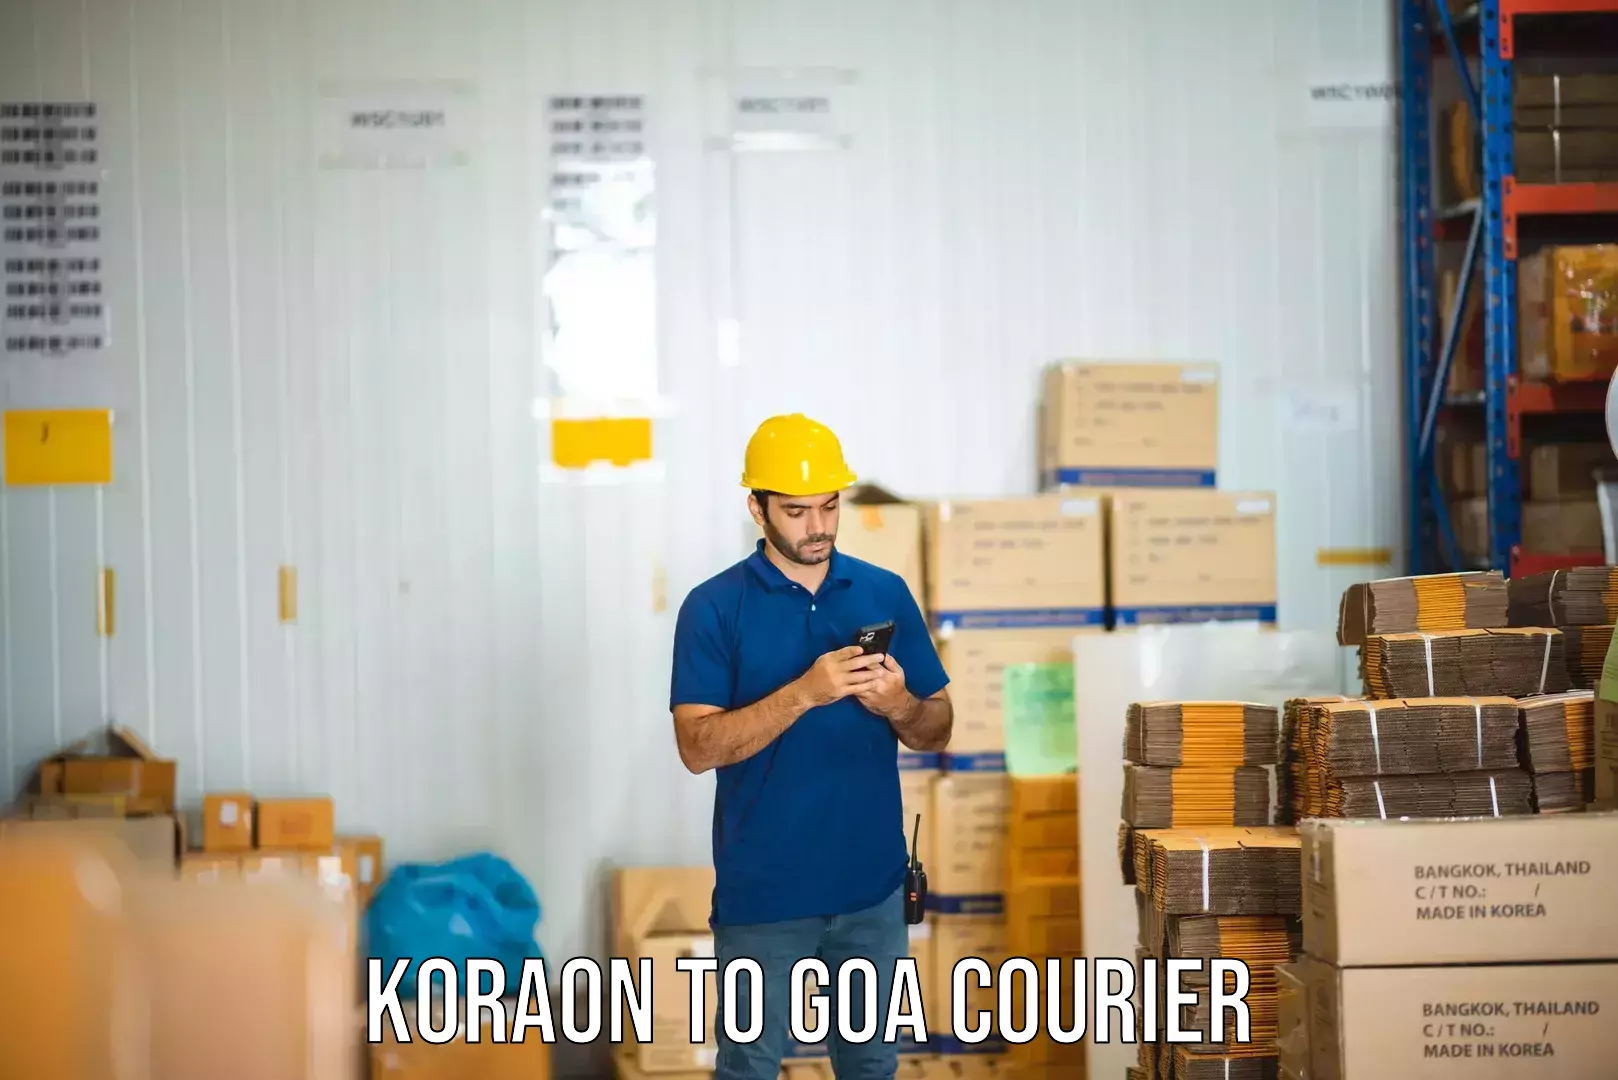 Budget-friendly shipping in Koraon to Panjim